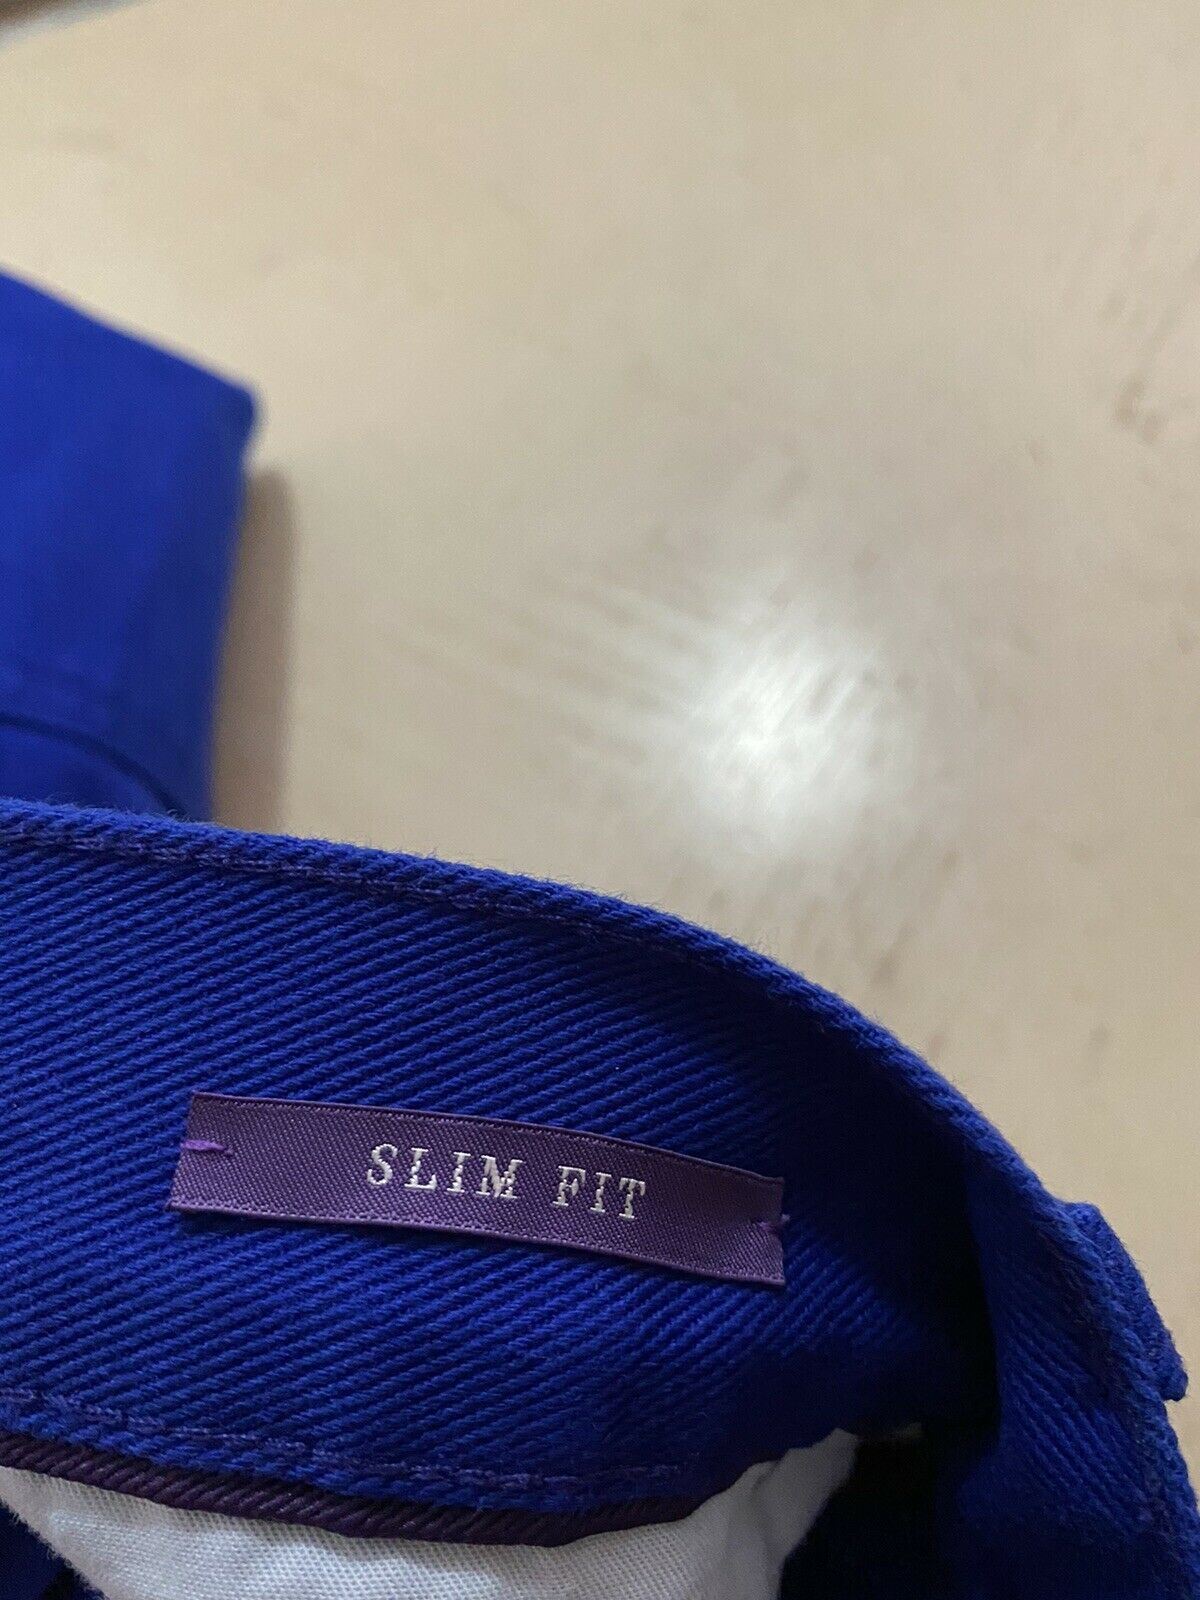 Neu mit Etikett: 495 $ Ralph Lauren Purple Label Herren Thompson Slim Jeans Hose Blau 34